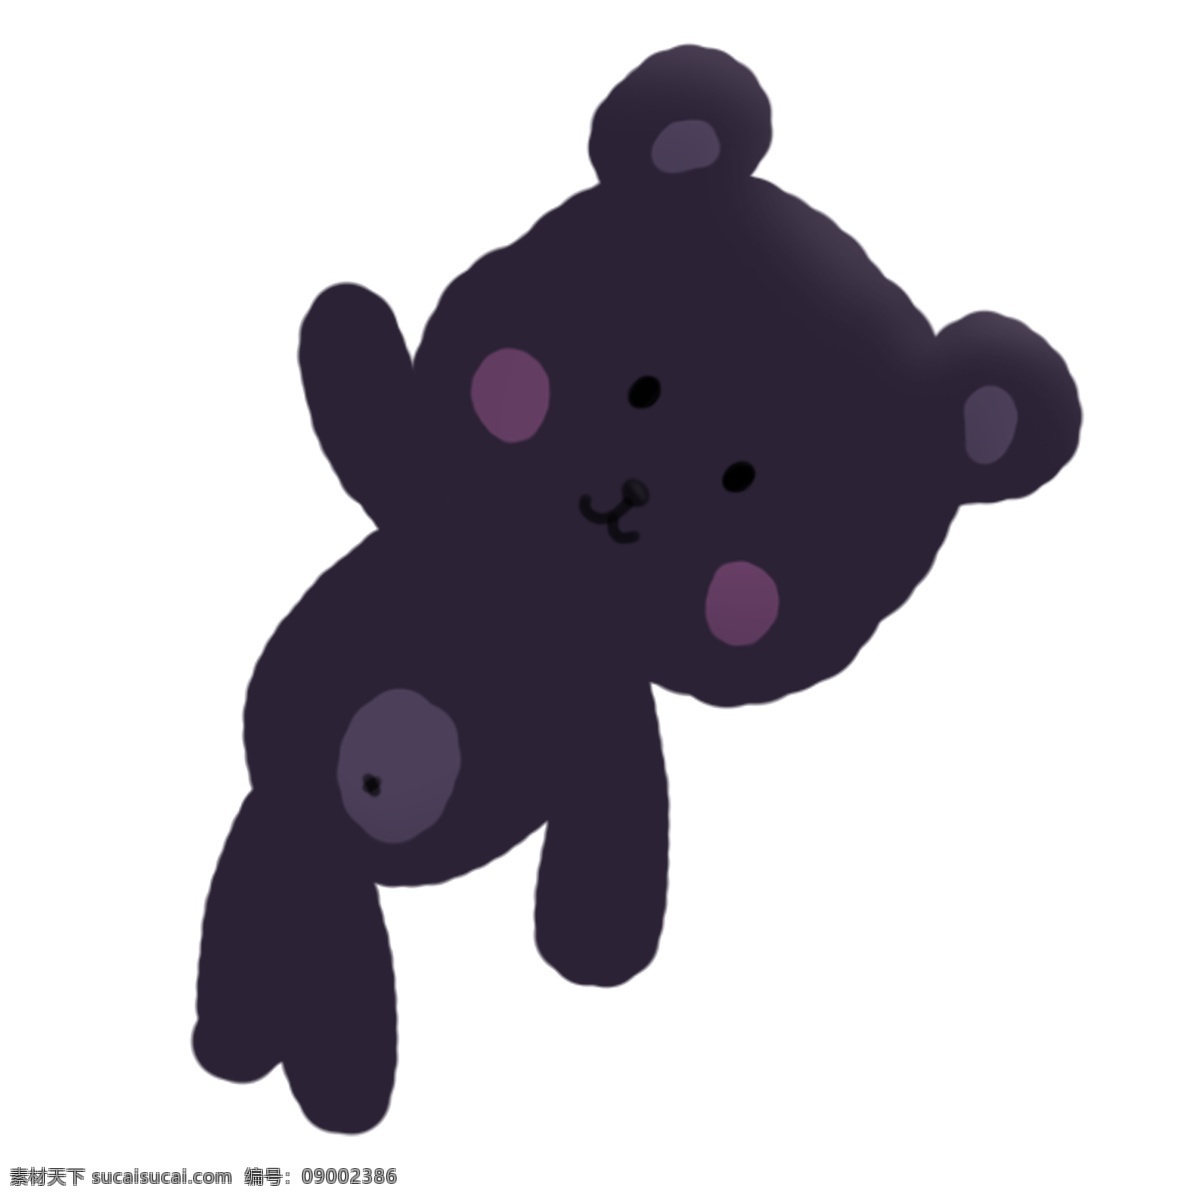 节日 假日 可爱 小 熊 手绘 插画 小熊 紫色 腮红 萌 卡通 假期 玩具 玩偶 公仔